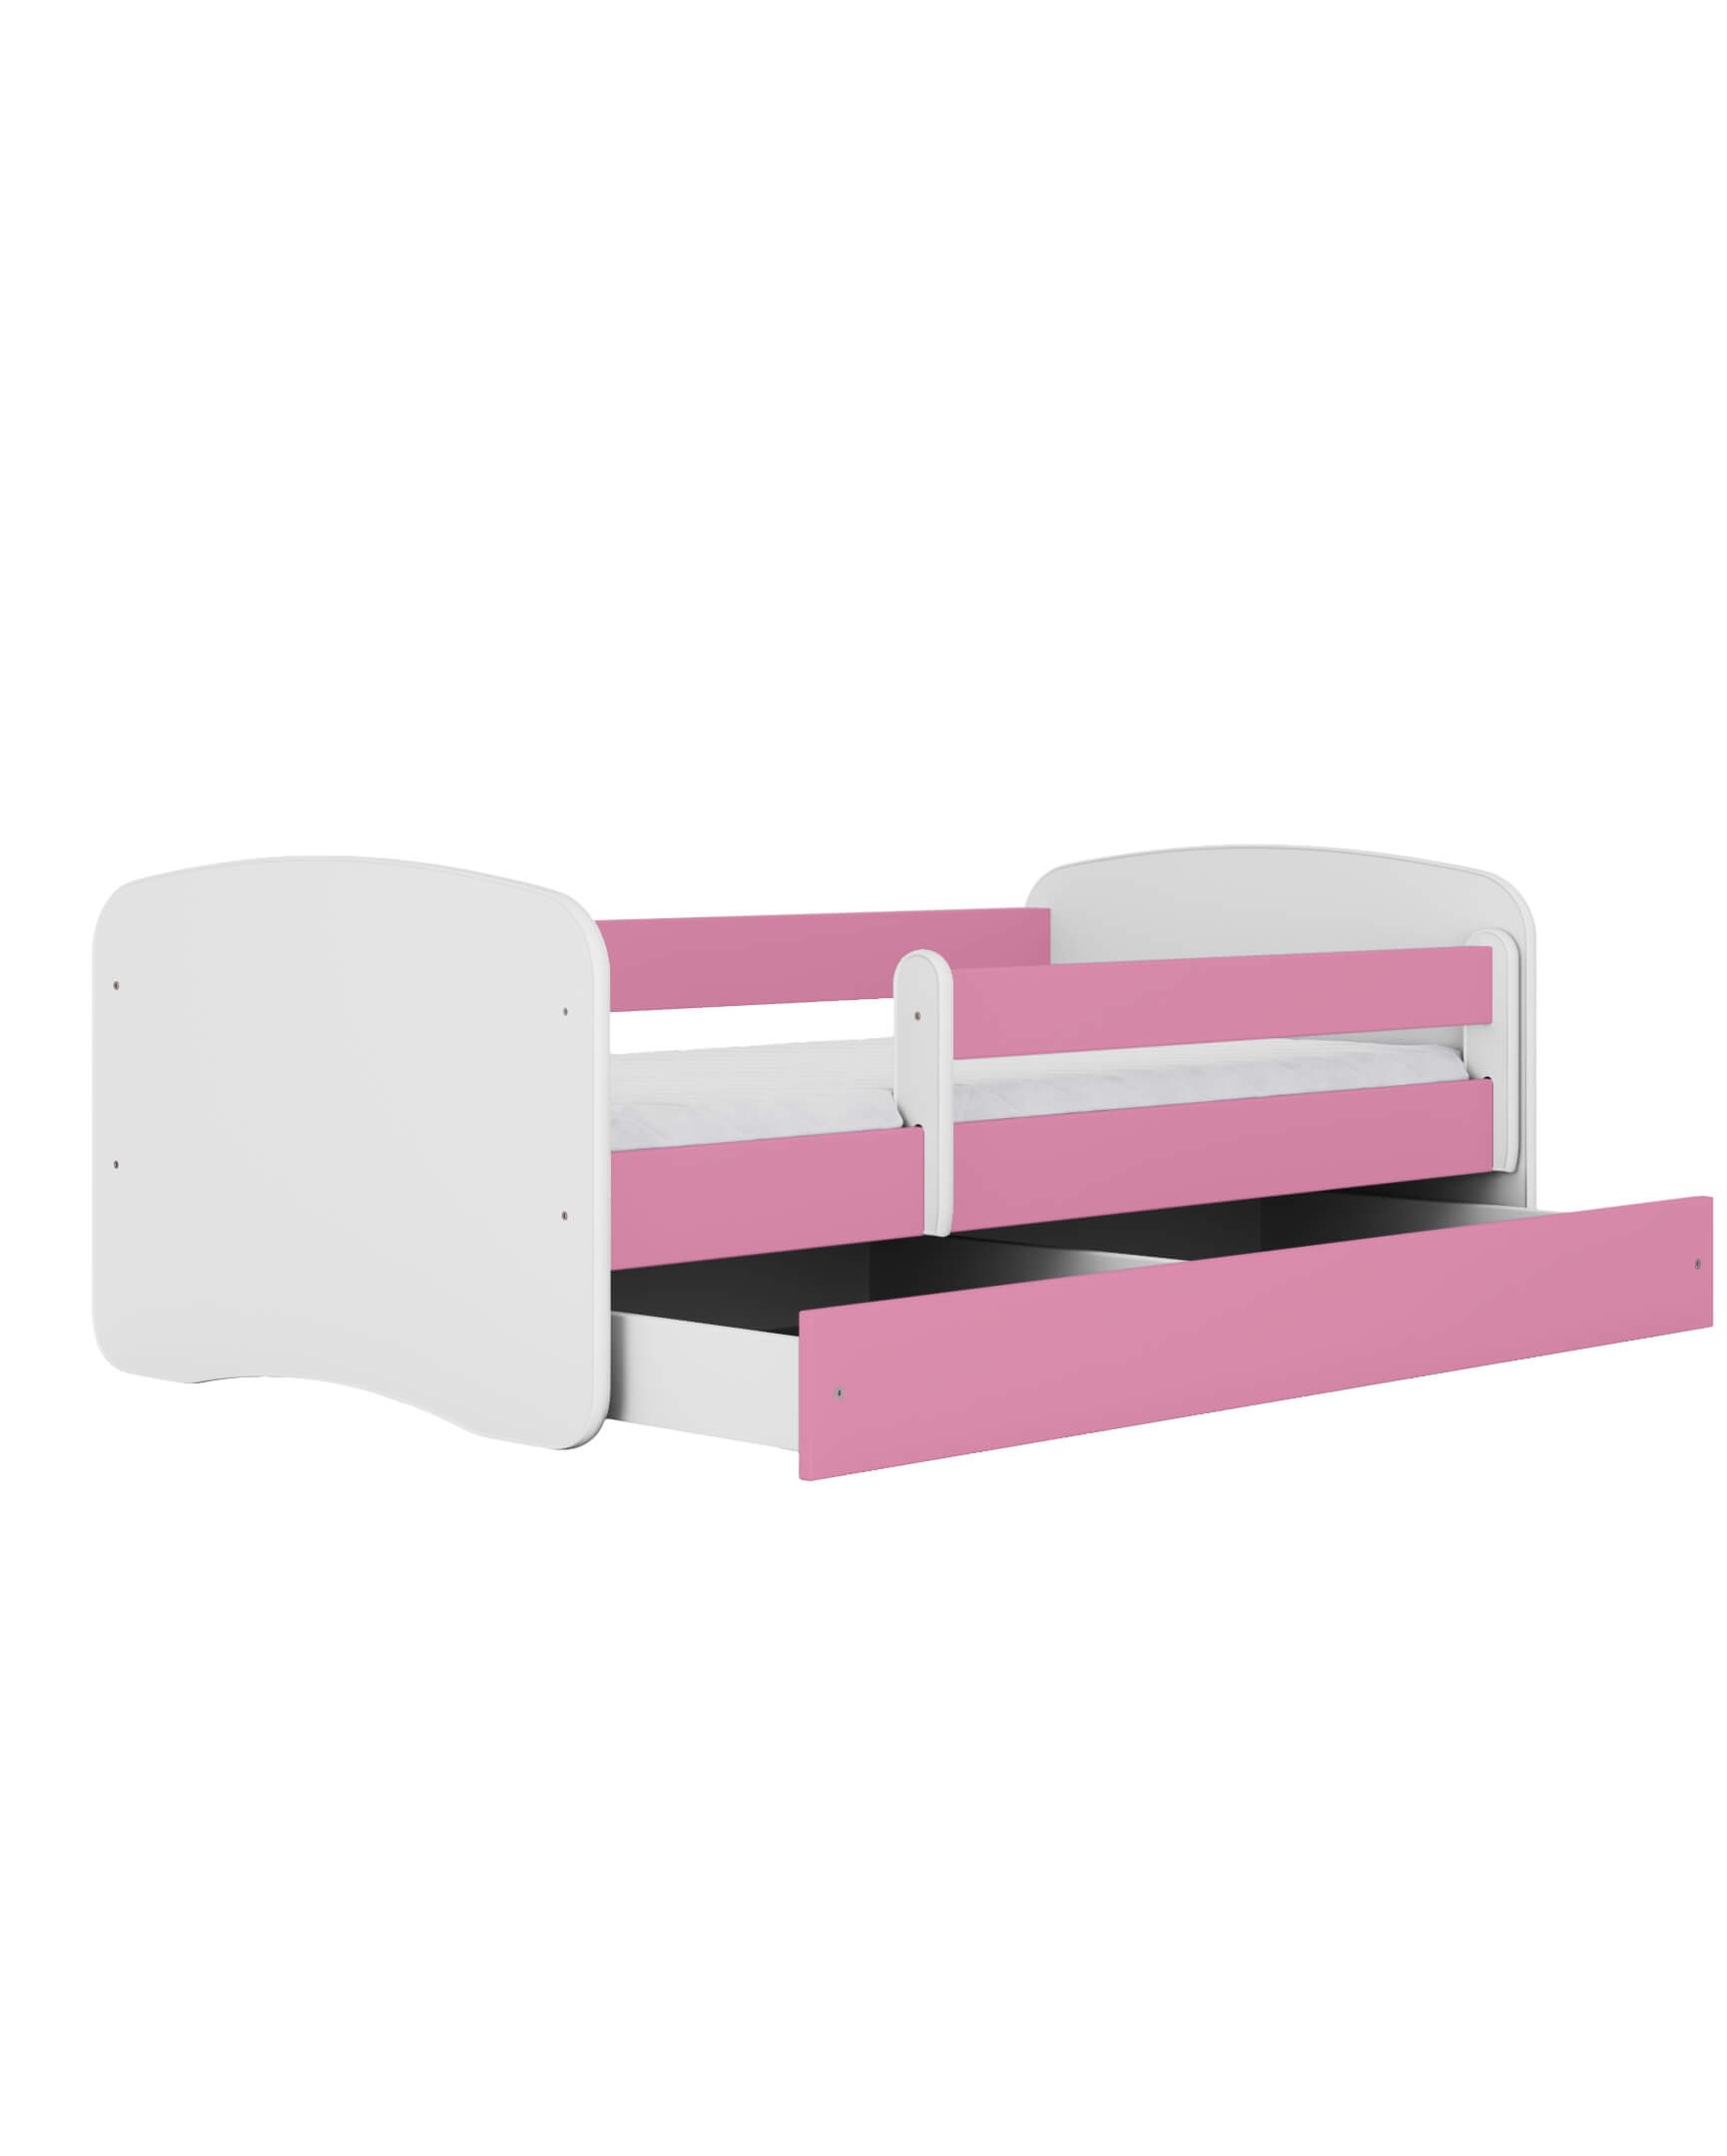 Dodatki w kolorze: różowym/łóżko